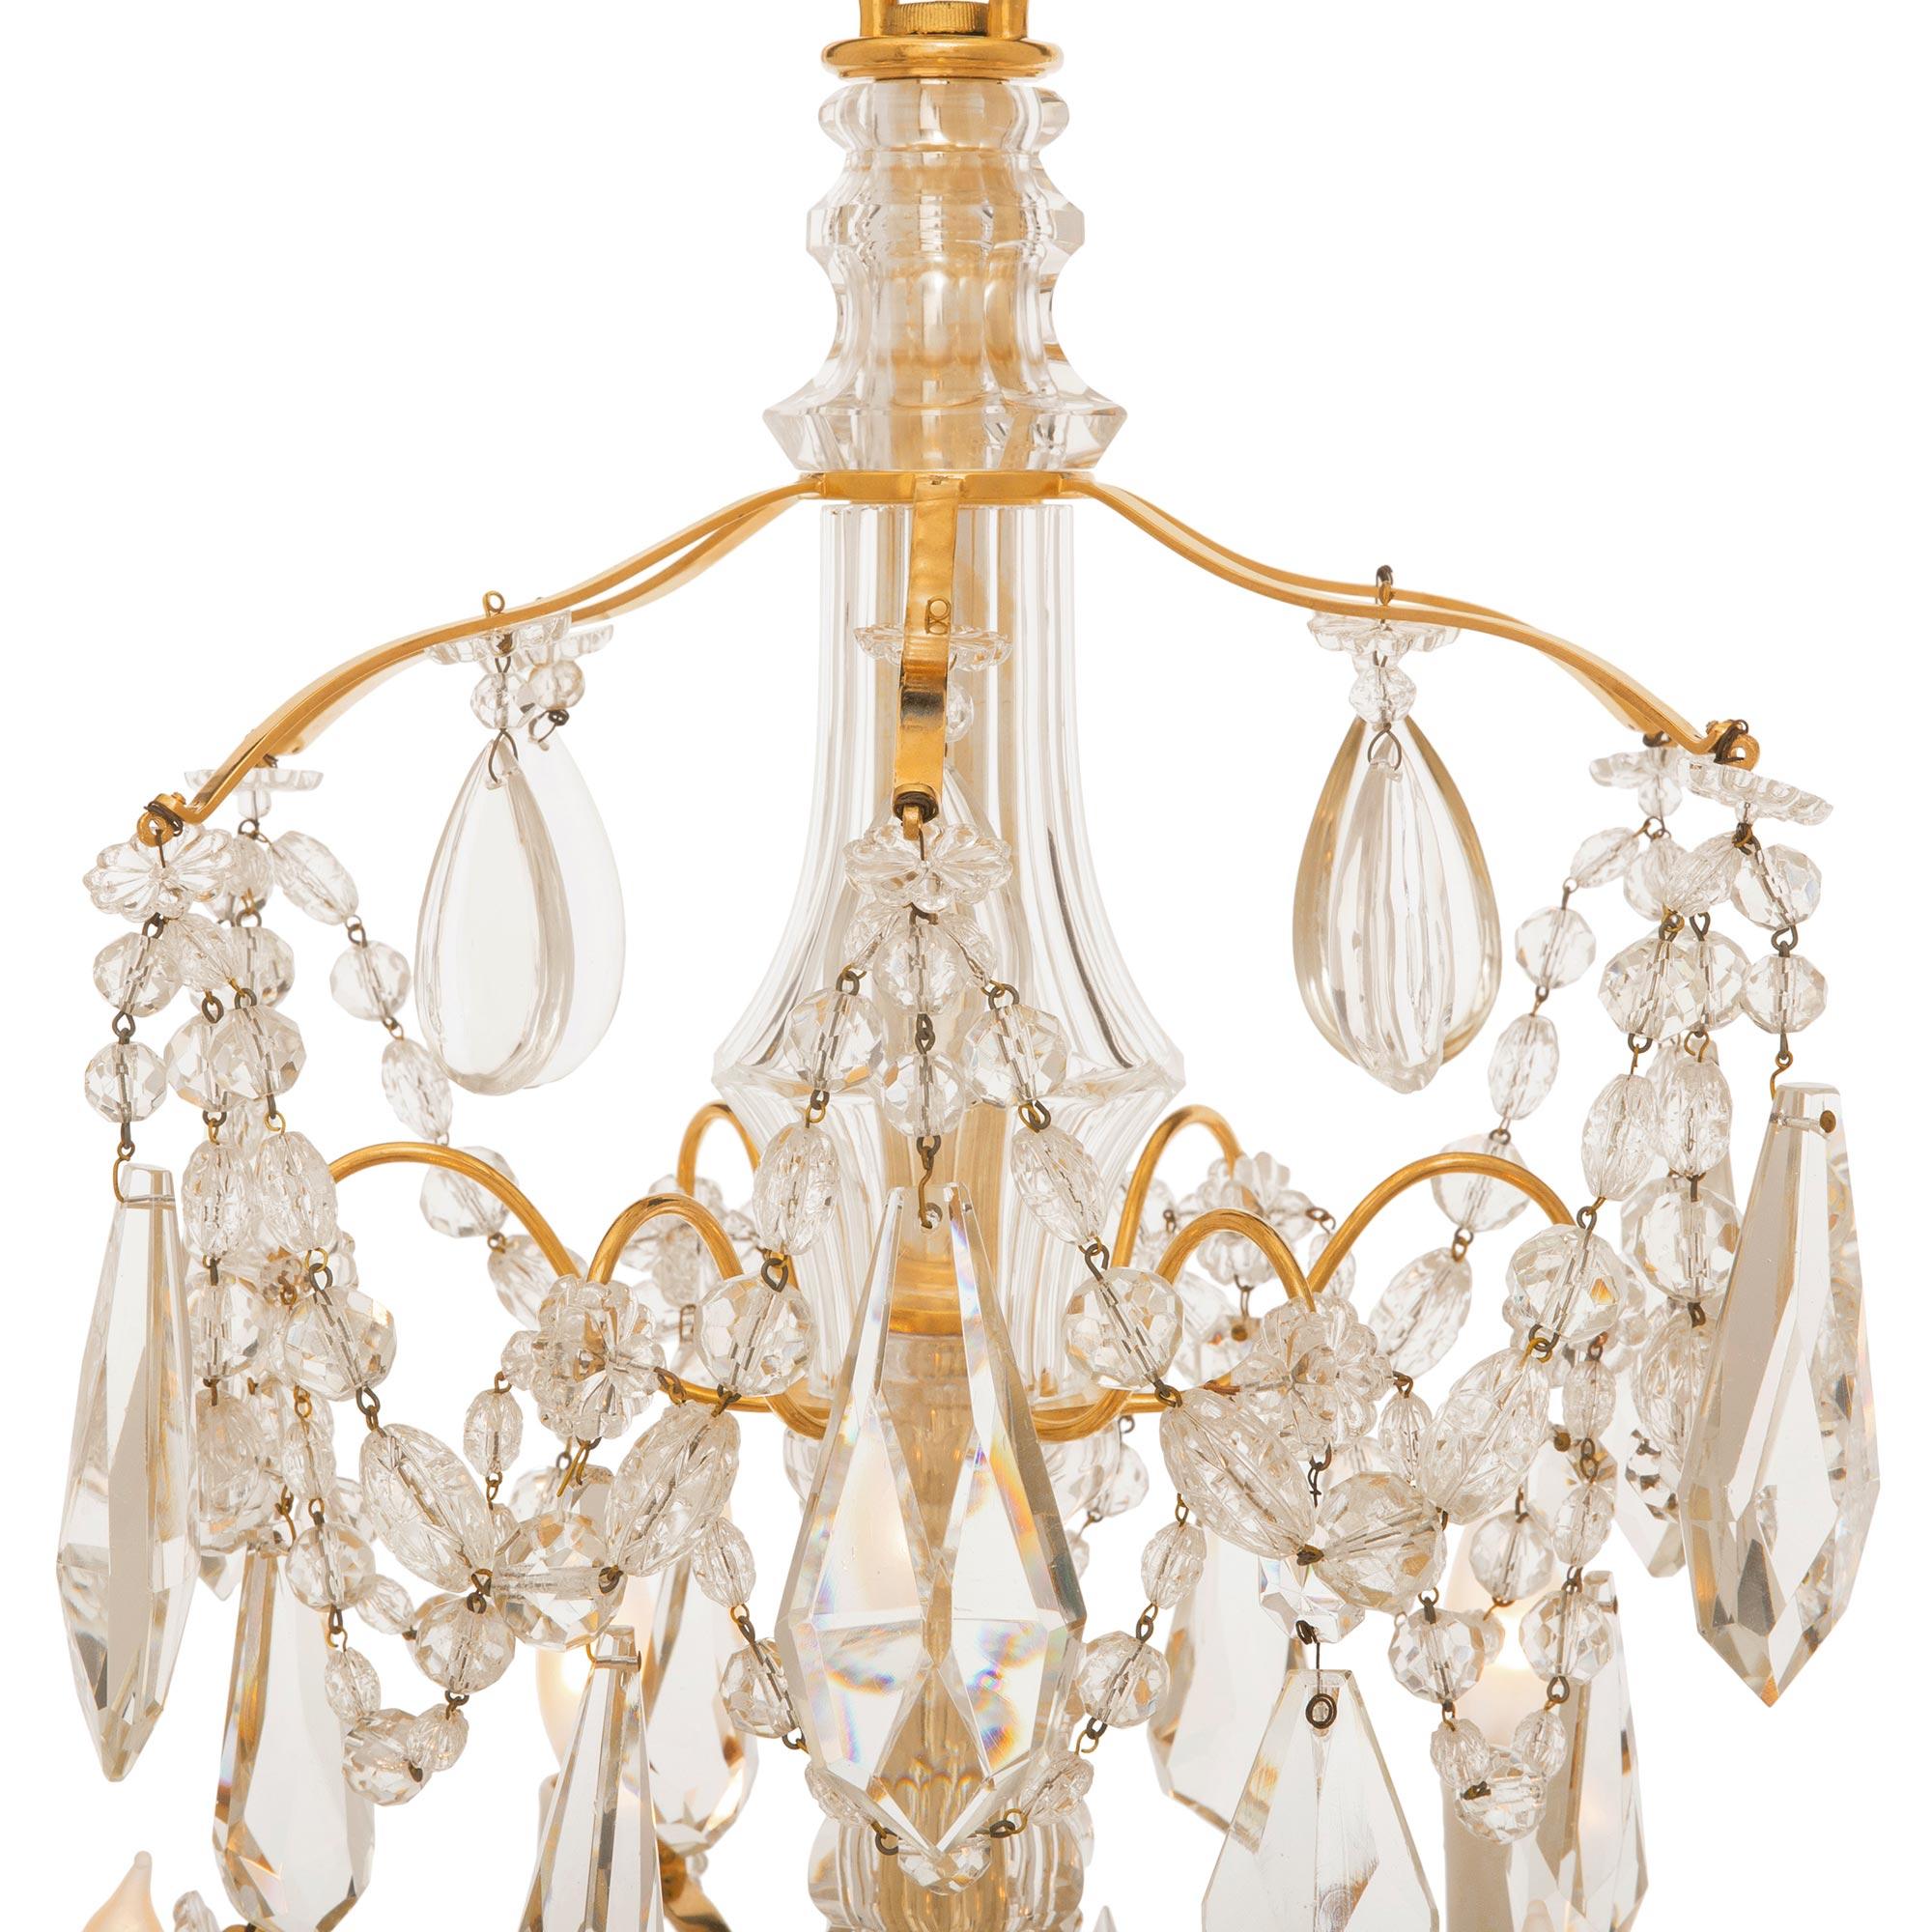 Ein schöner französischer Kronleuchter aus dem 19. Jahrhundert aus Louis XVI Ormolu und Baccarat Kristall. Der zwölfarmige Kronleuchter mit vierzehn Lichtern wird von einer auffälligen, facettierten Kristallkugel unter einer Reihe von exquisiten